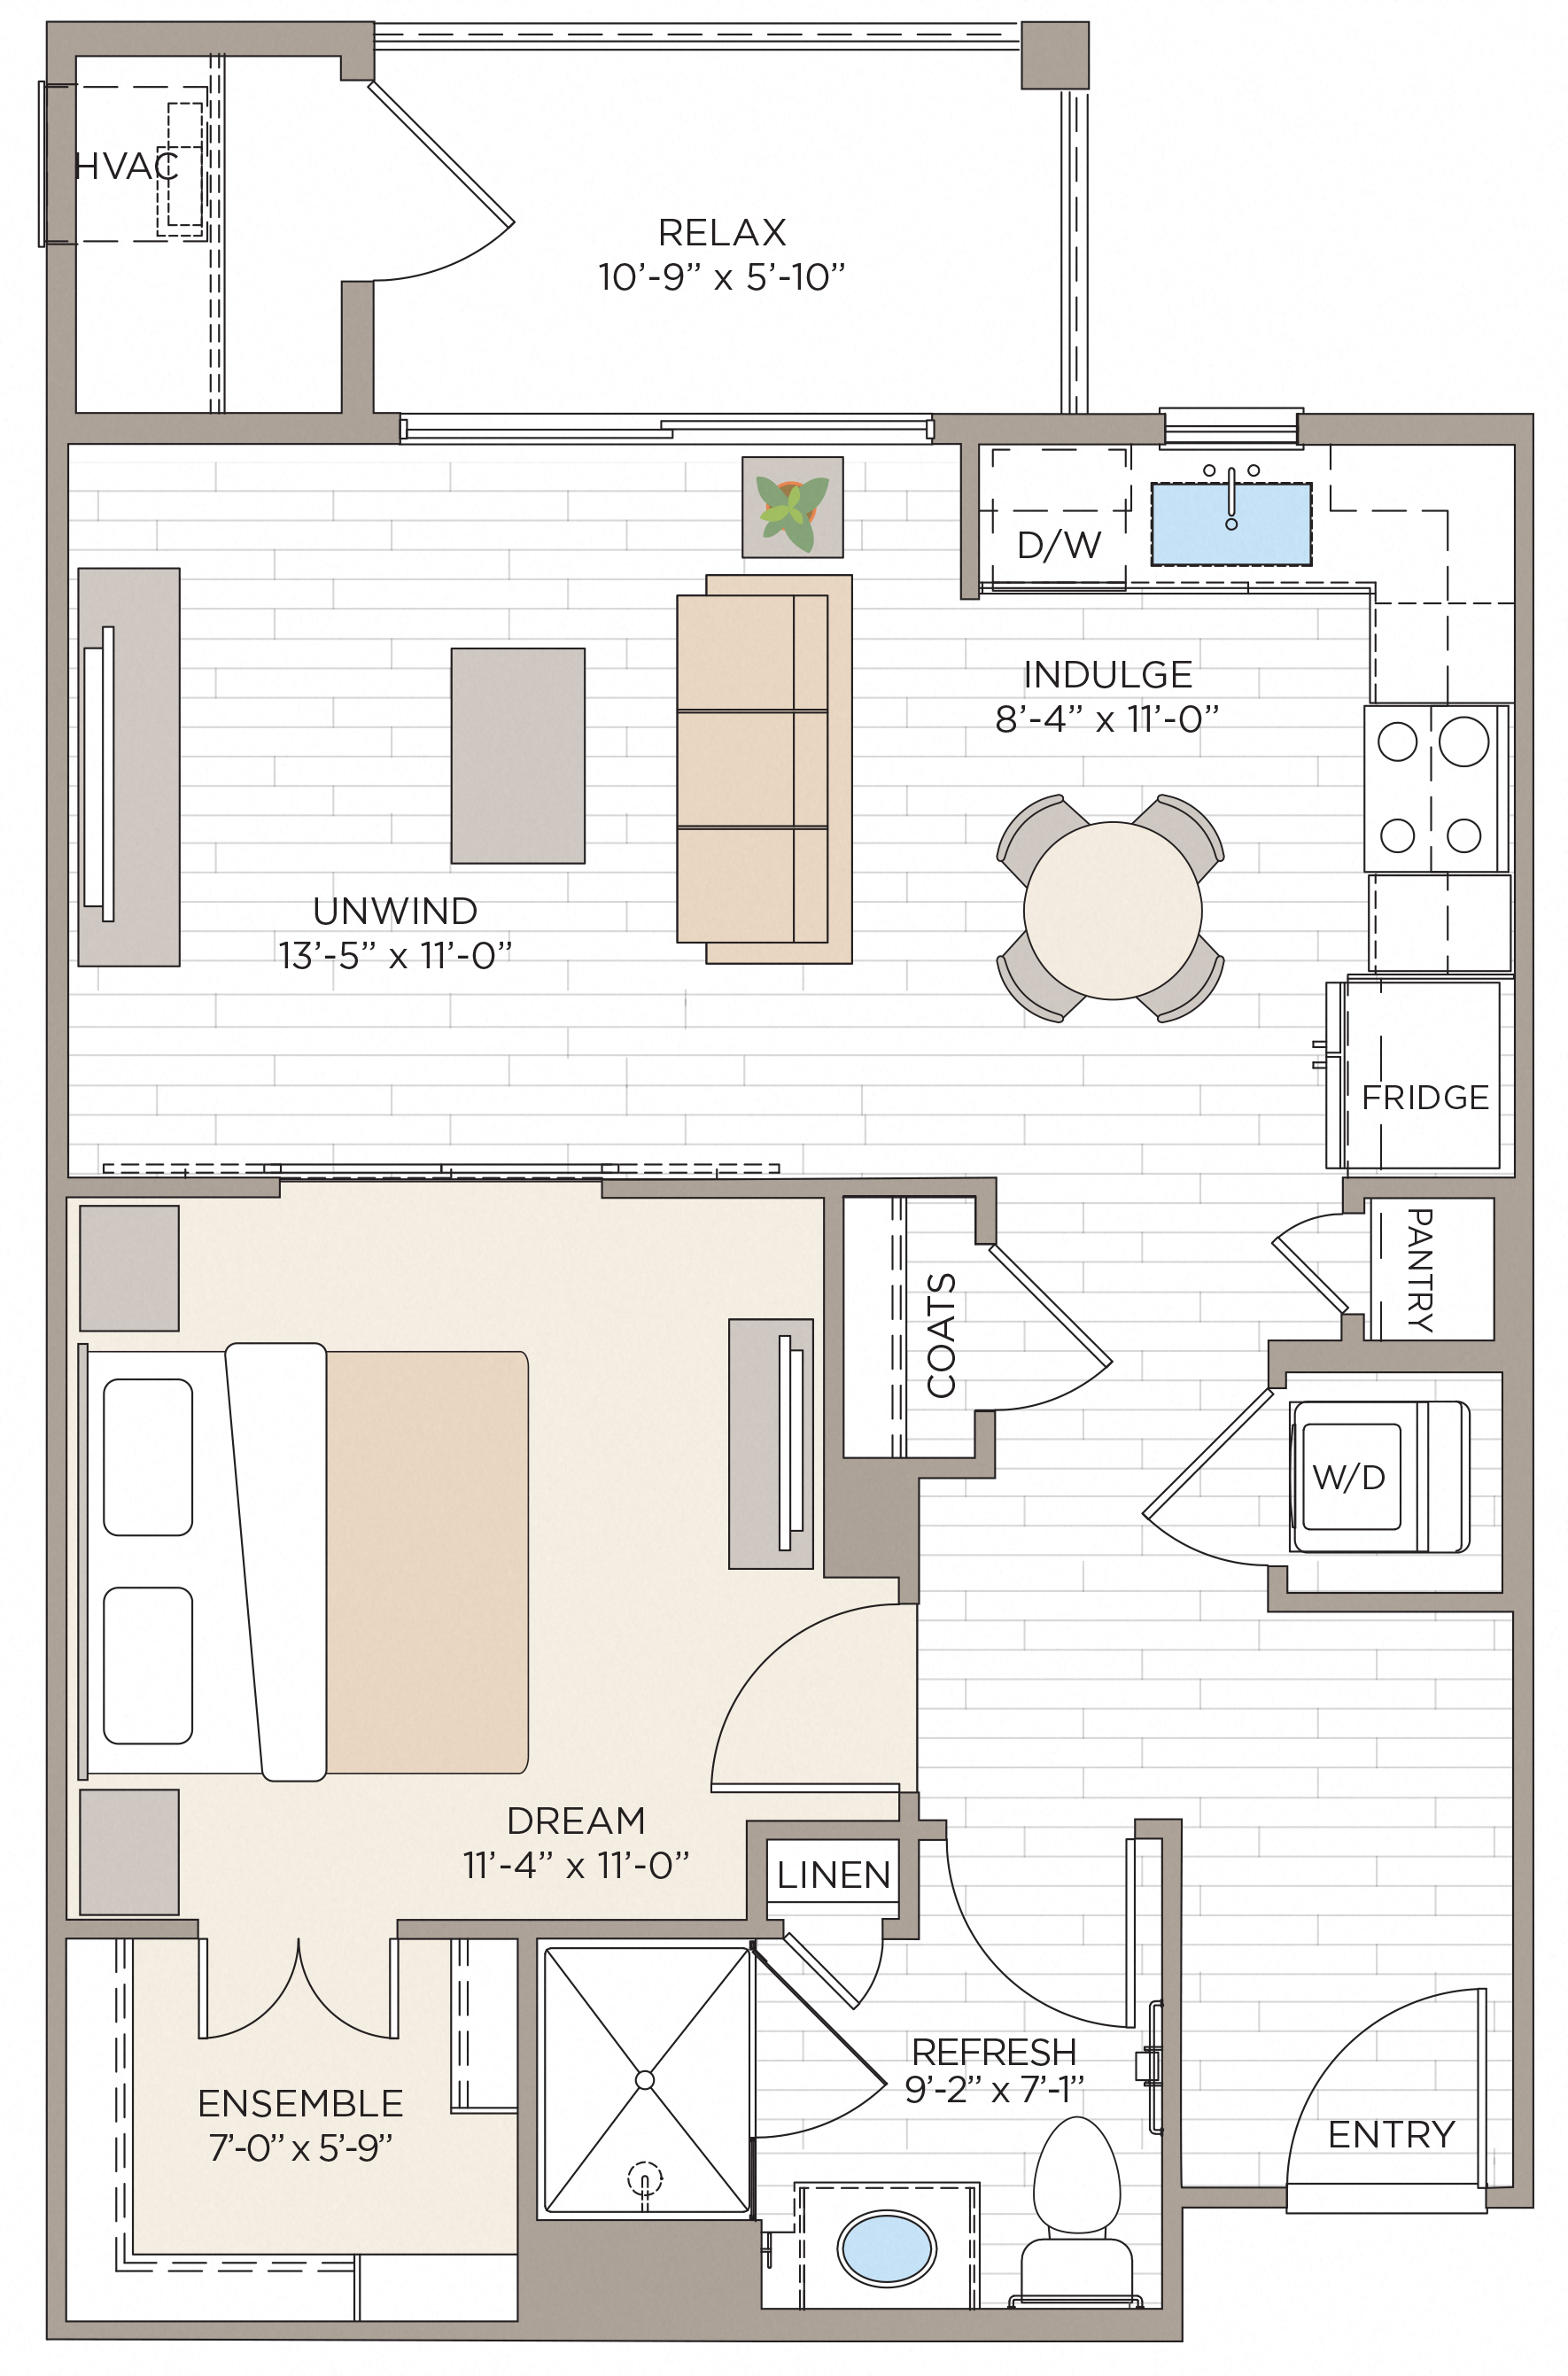 Floorplan for Unit #A1A, 1 bedroom unit at Halstead Maynard Crossing